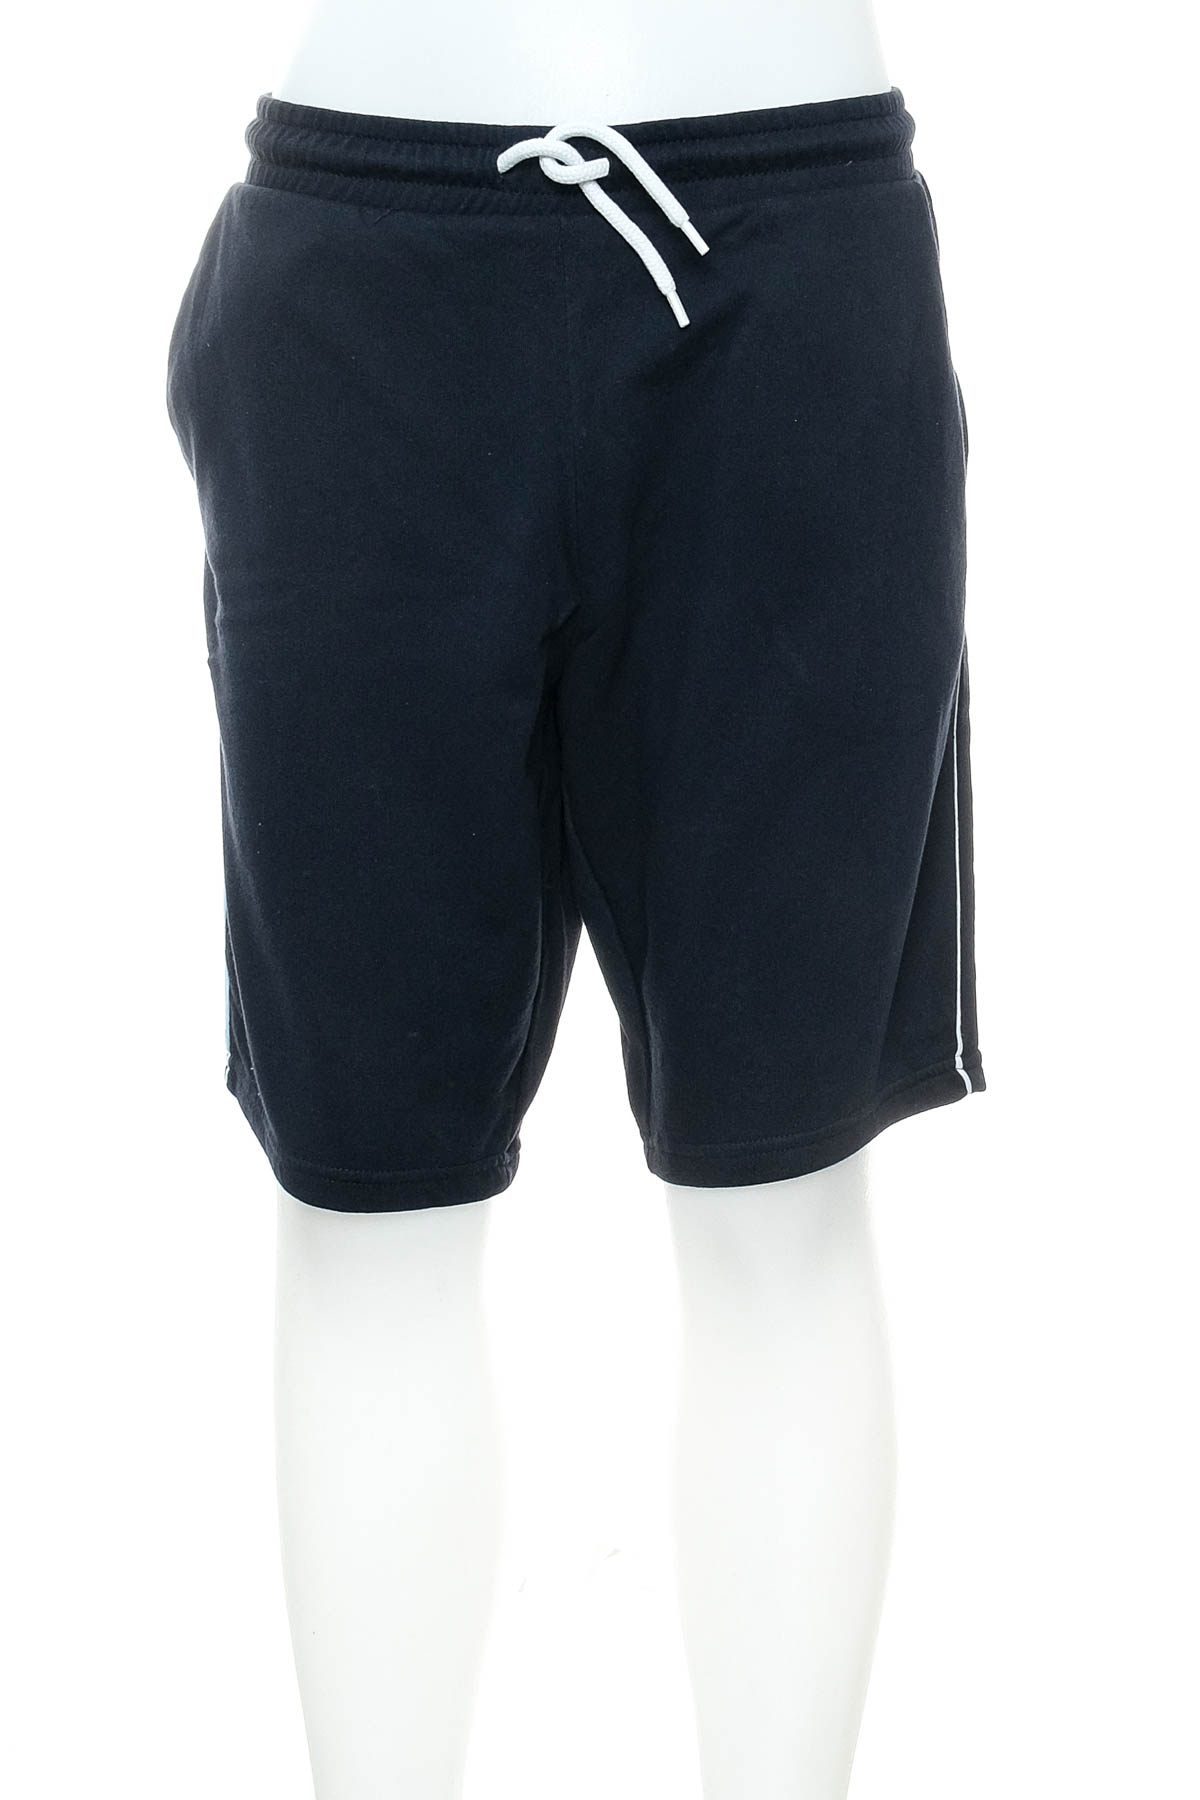 Men's shorts - C&A - 0